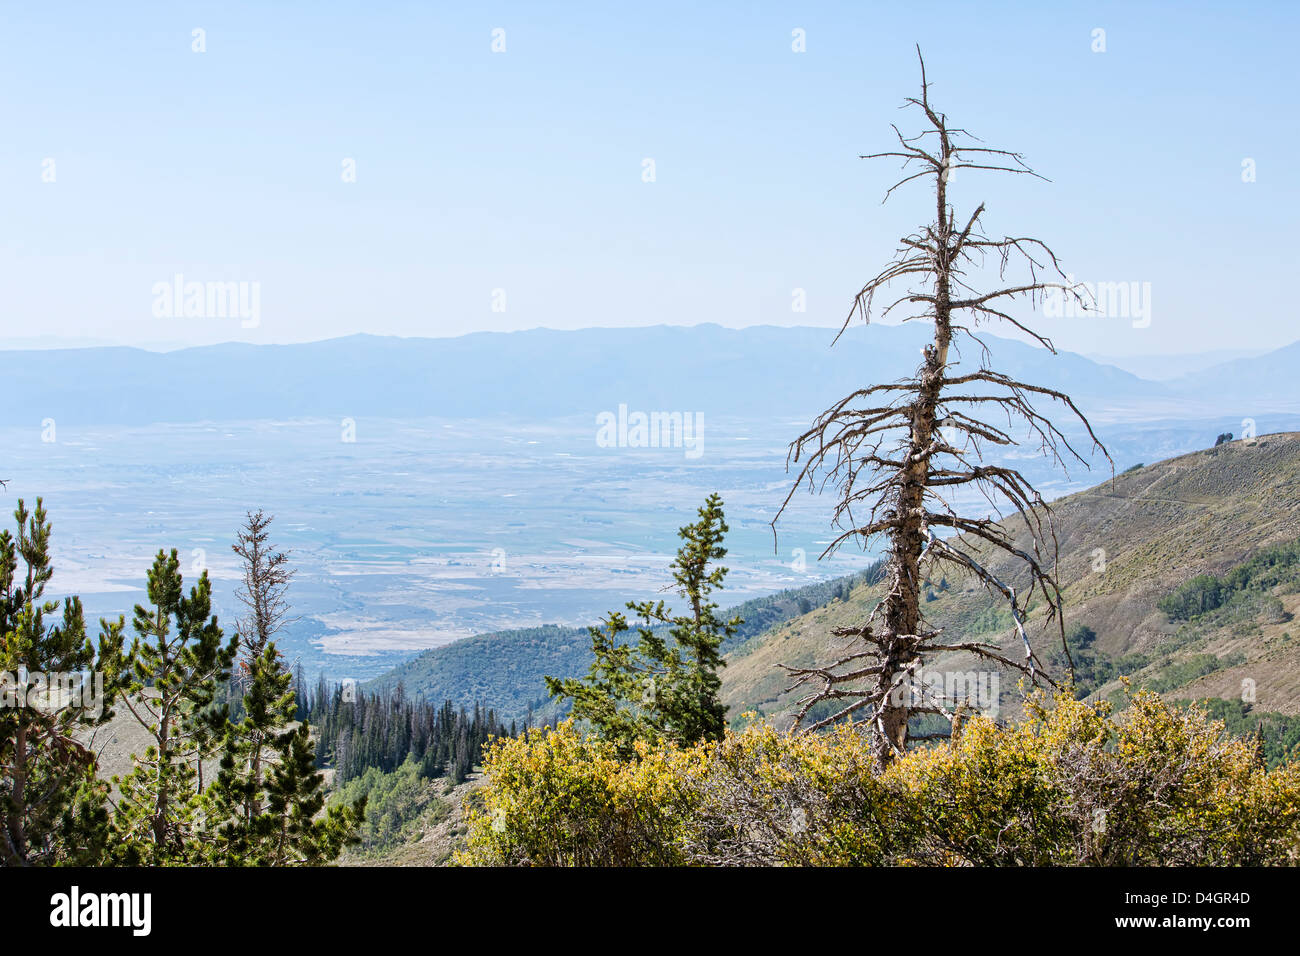 Toter Baum Bergtal übersehen 3105.jpg Stockfoto